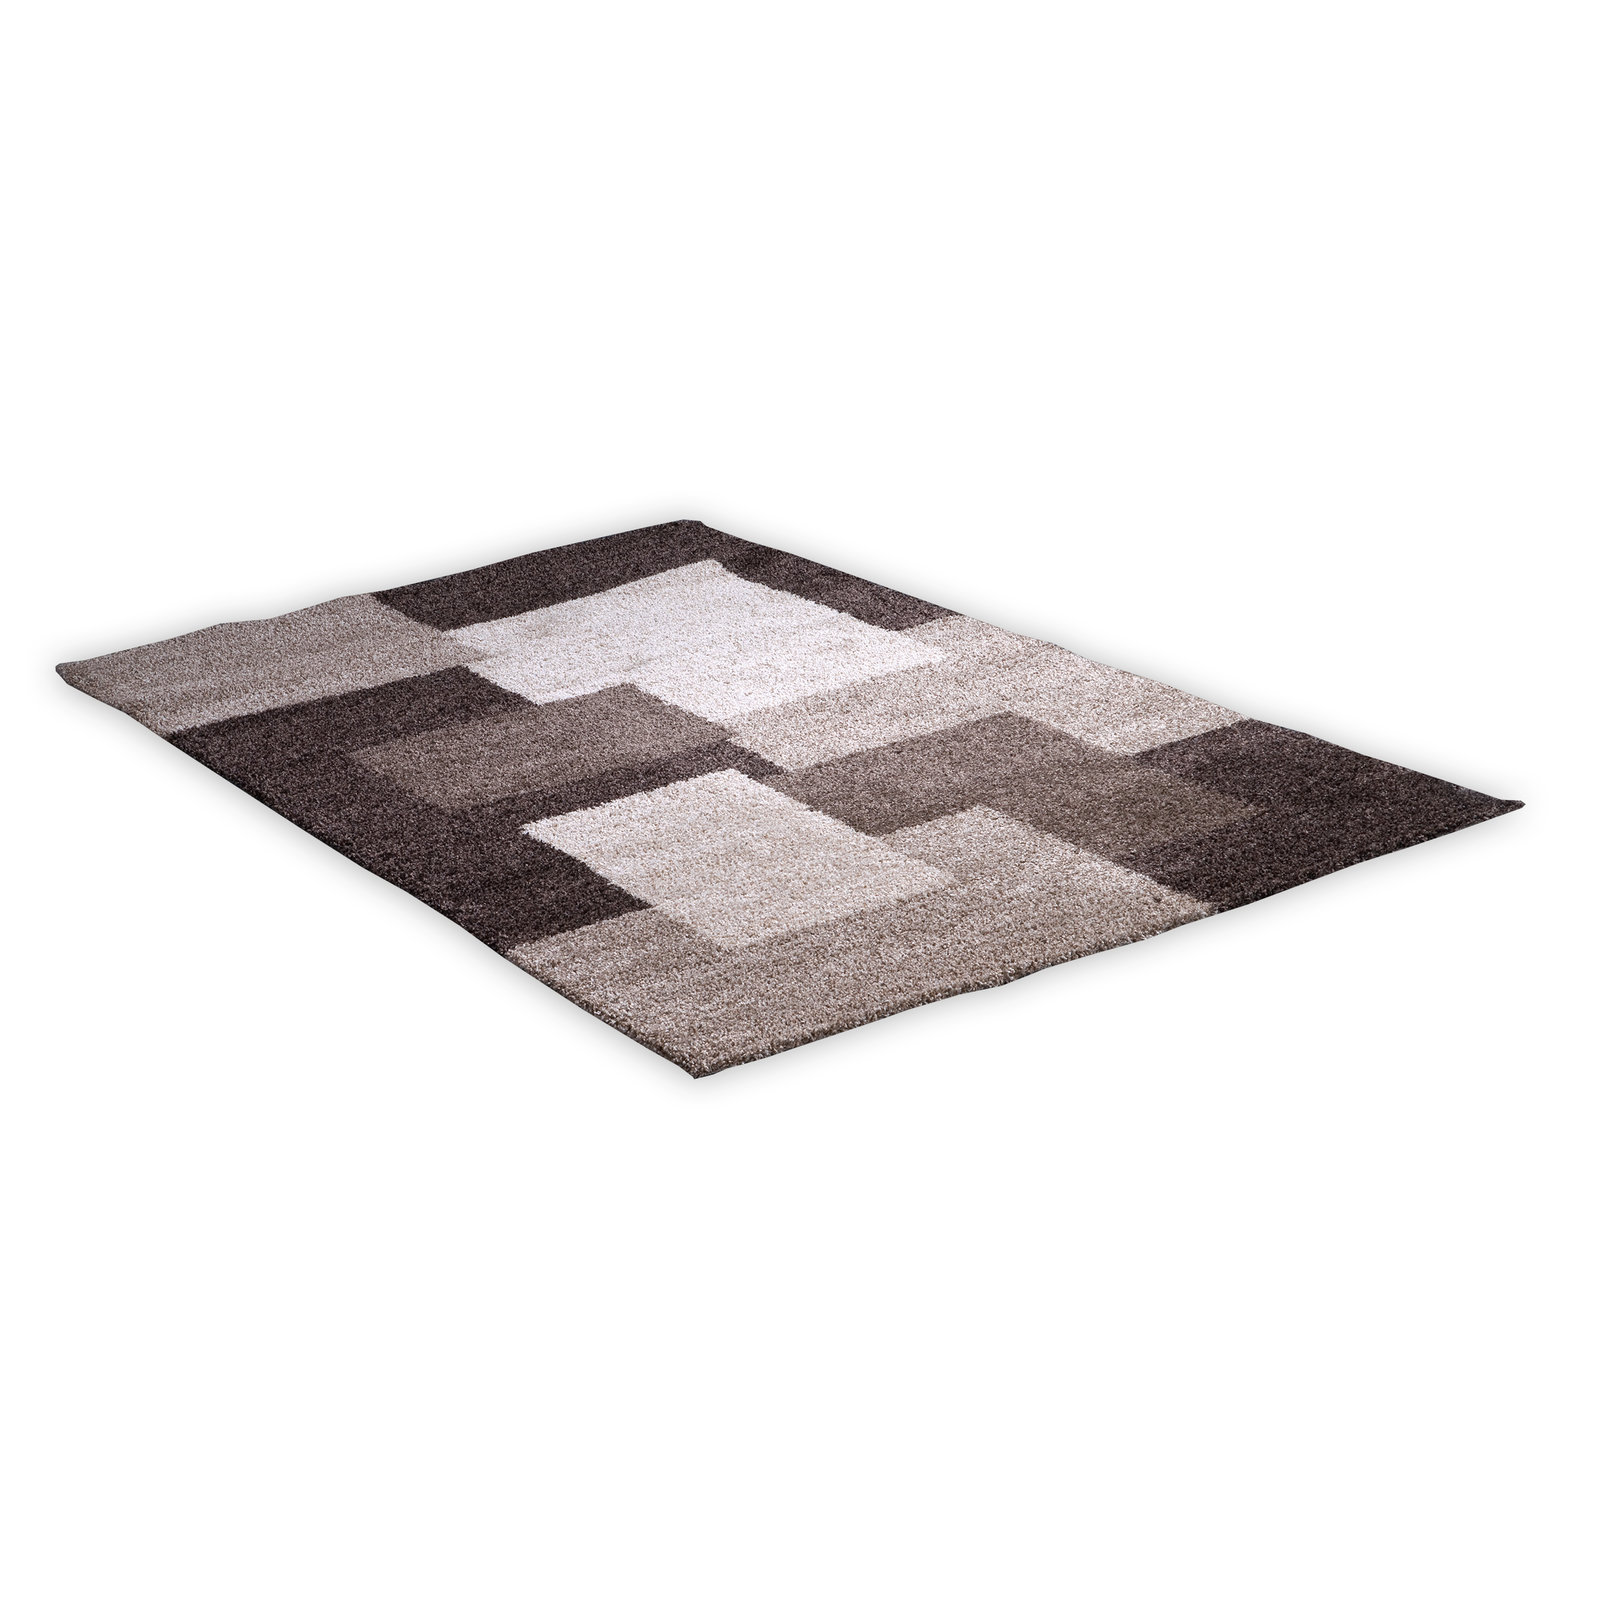 Teppich - beige-braun - 80x150 cm | Online bei ROLLER kaufen